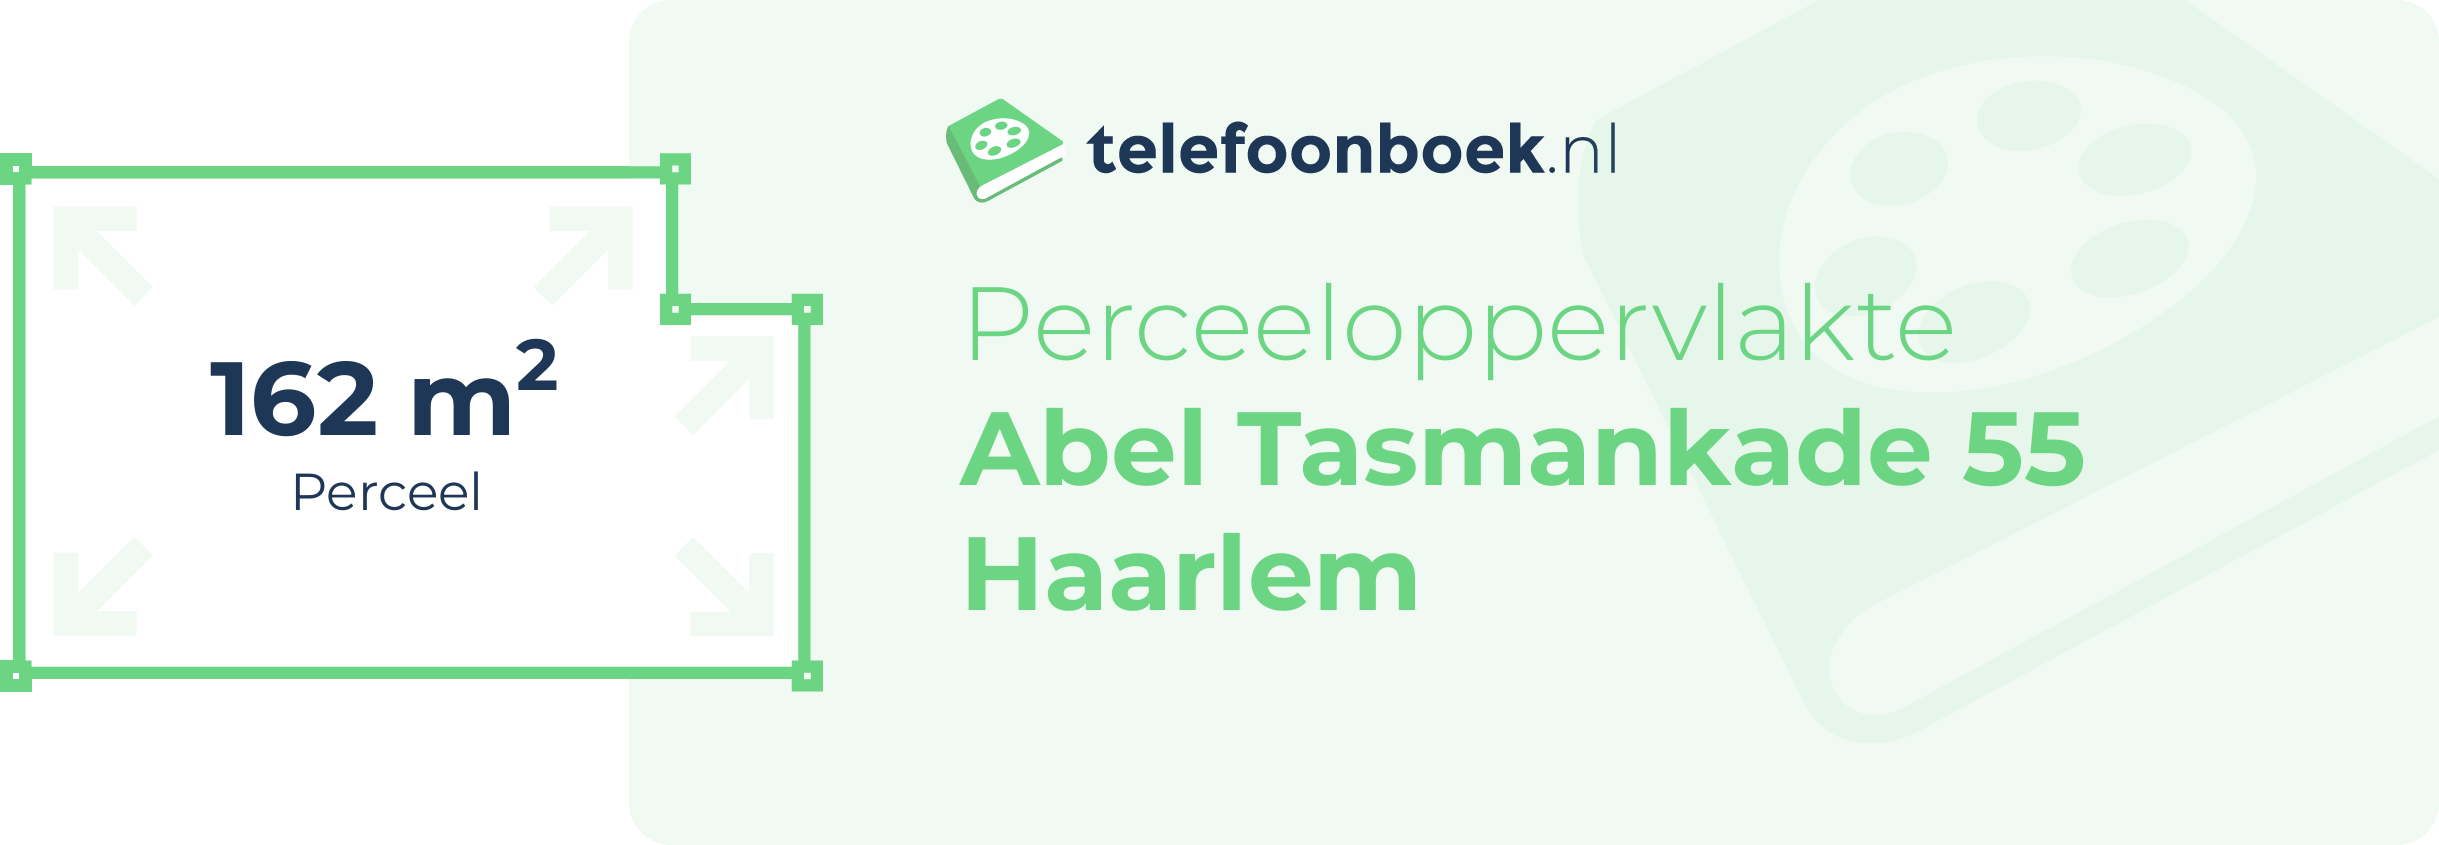 Perceeloppervlakte Abel Tasmankade 55 Haarlem